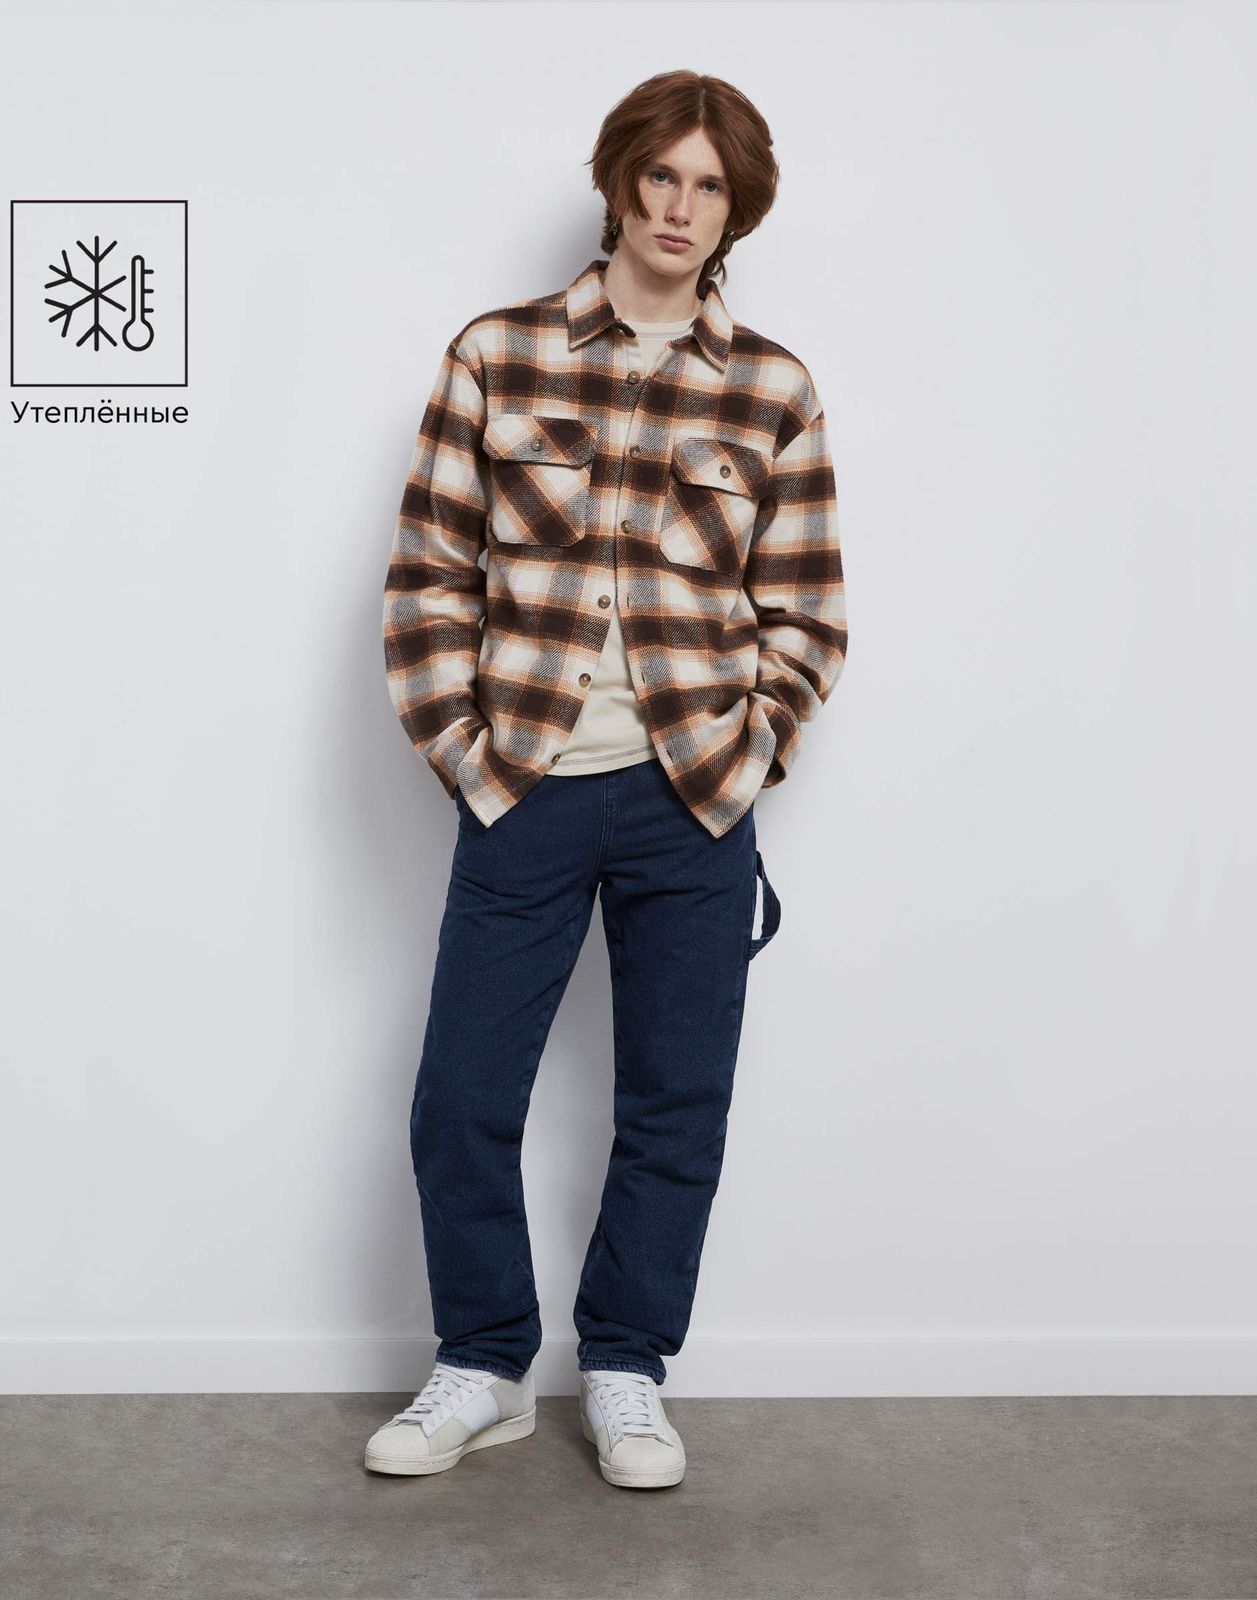 Утеплённые джинсы Straight с хлястиком  BWB001830 медиум-дарк/айс 14+/170 для мальчика